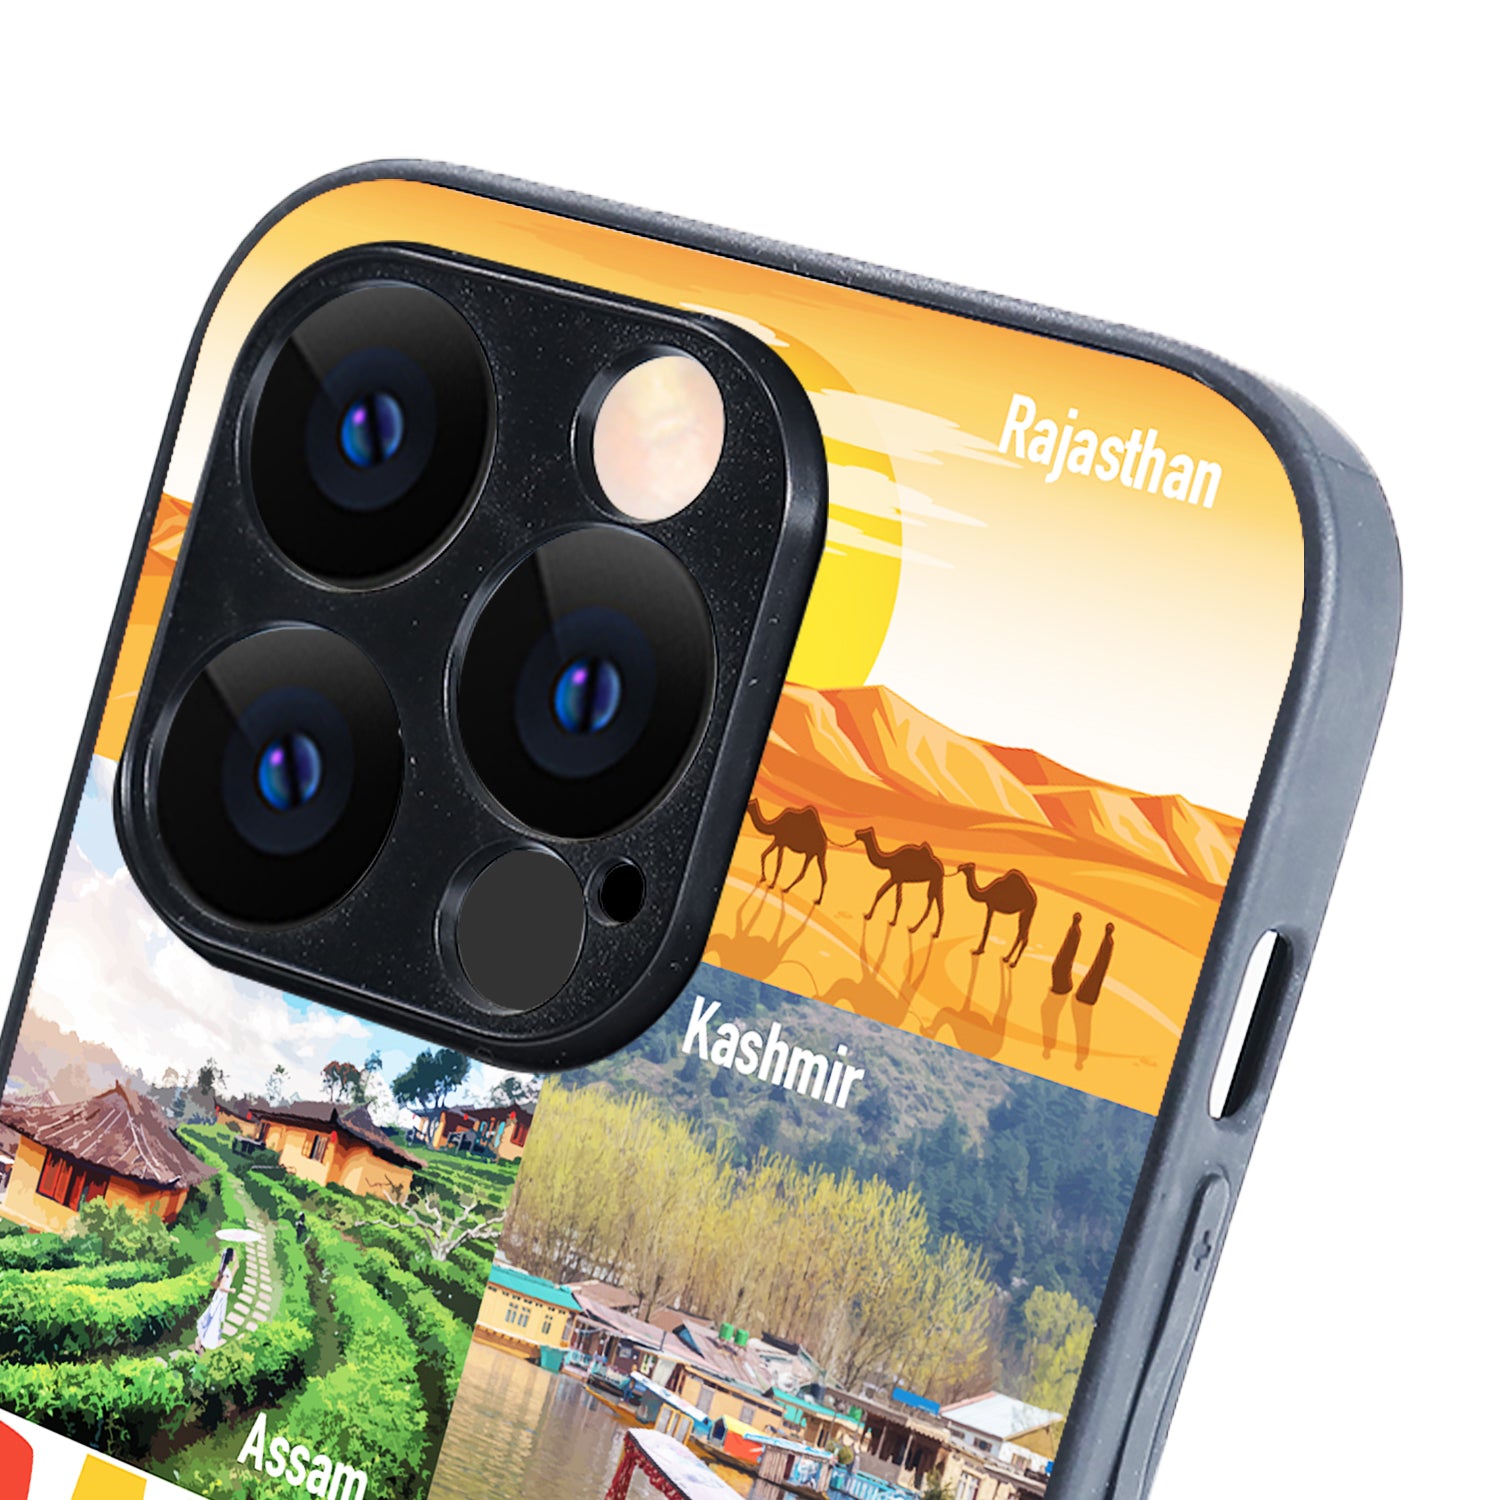 Banjara Travel iPhone 14 Pro Case